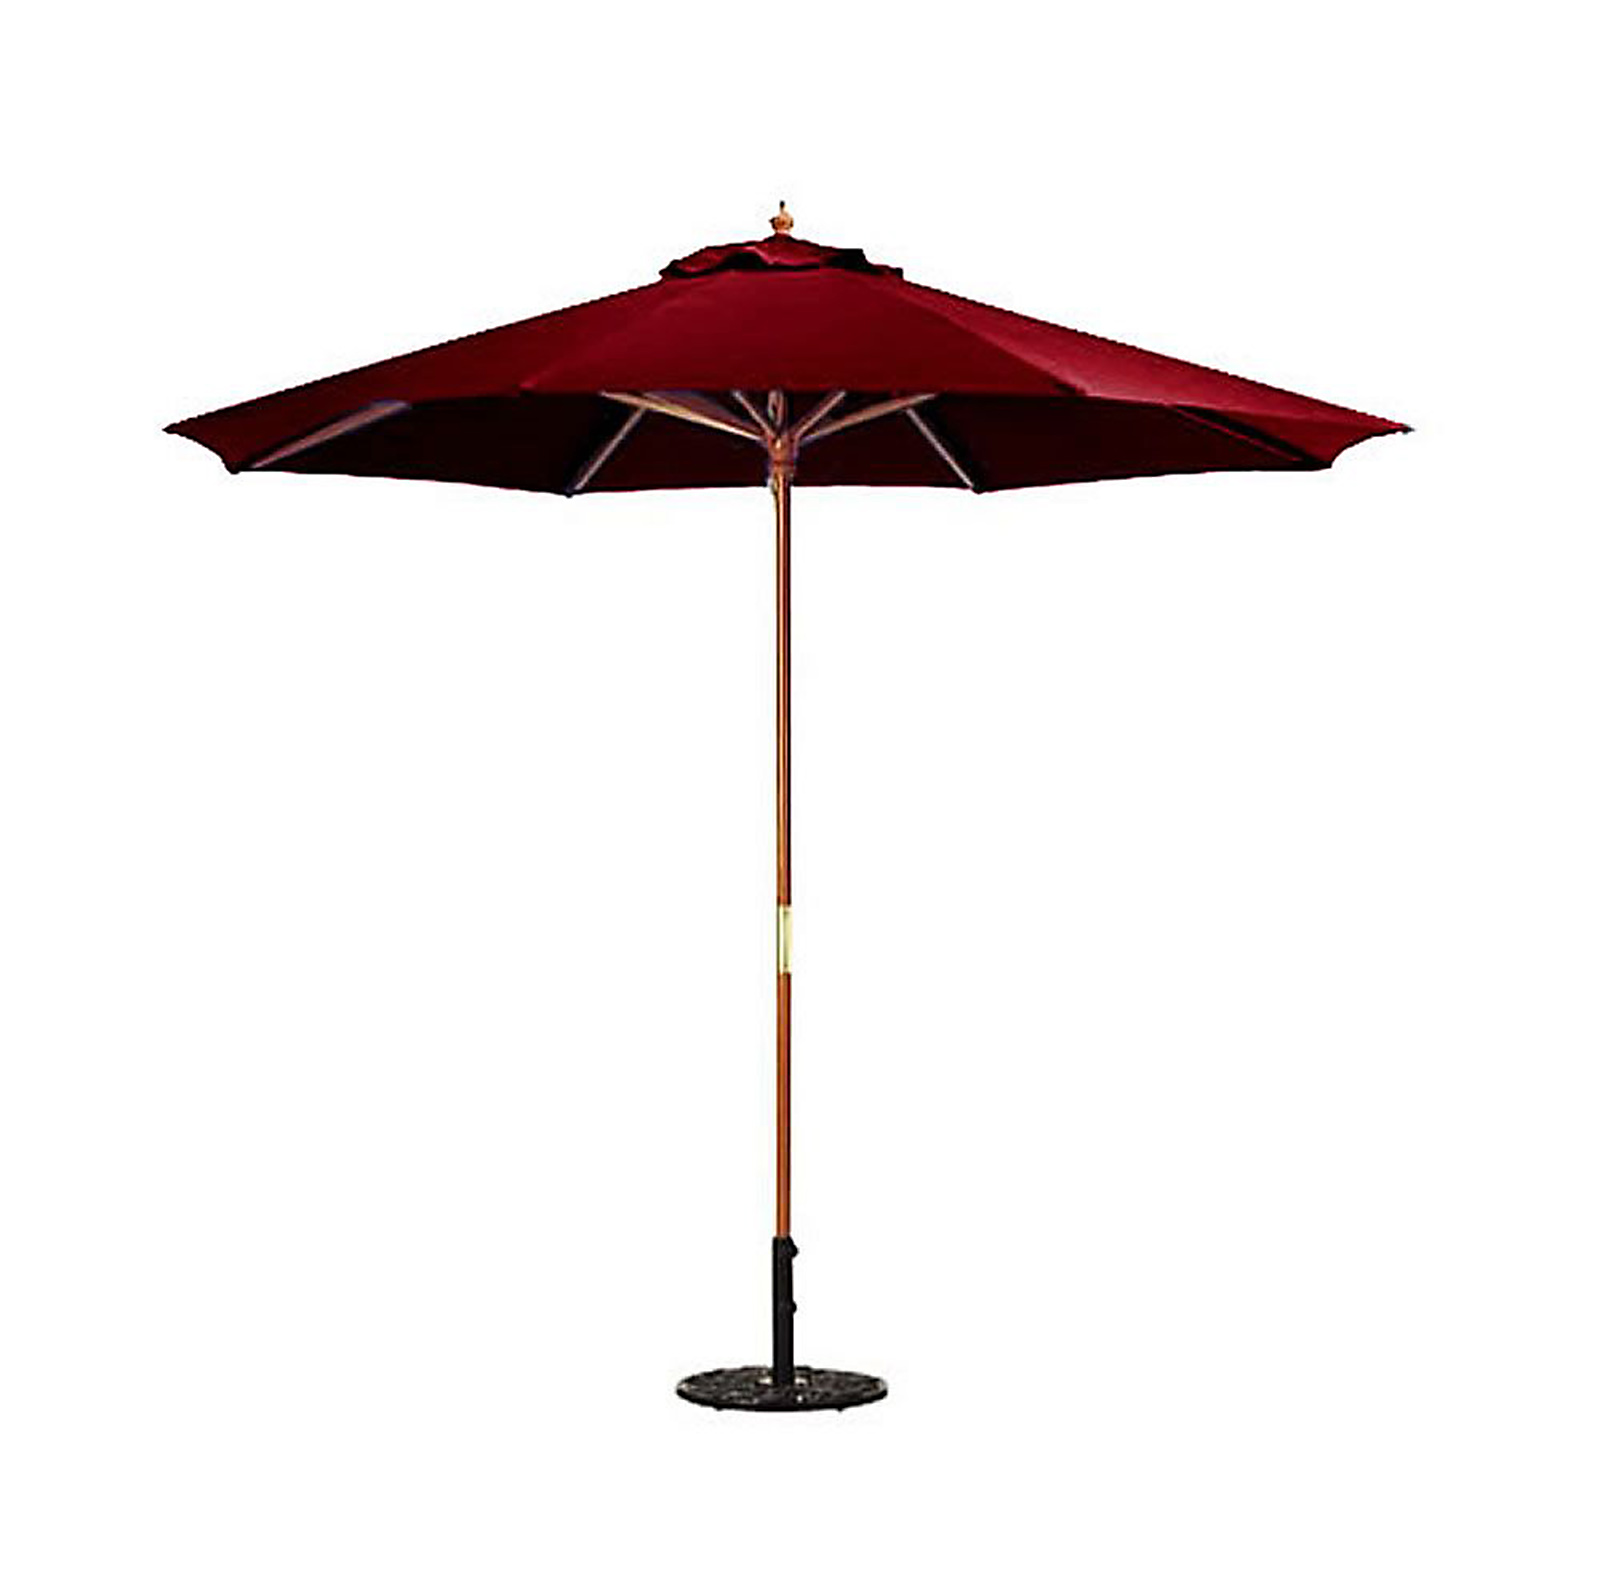 9' Wood Market Umbrella in Assorted colors